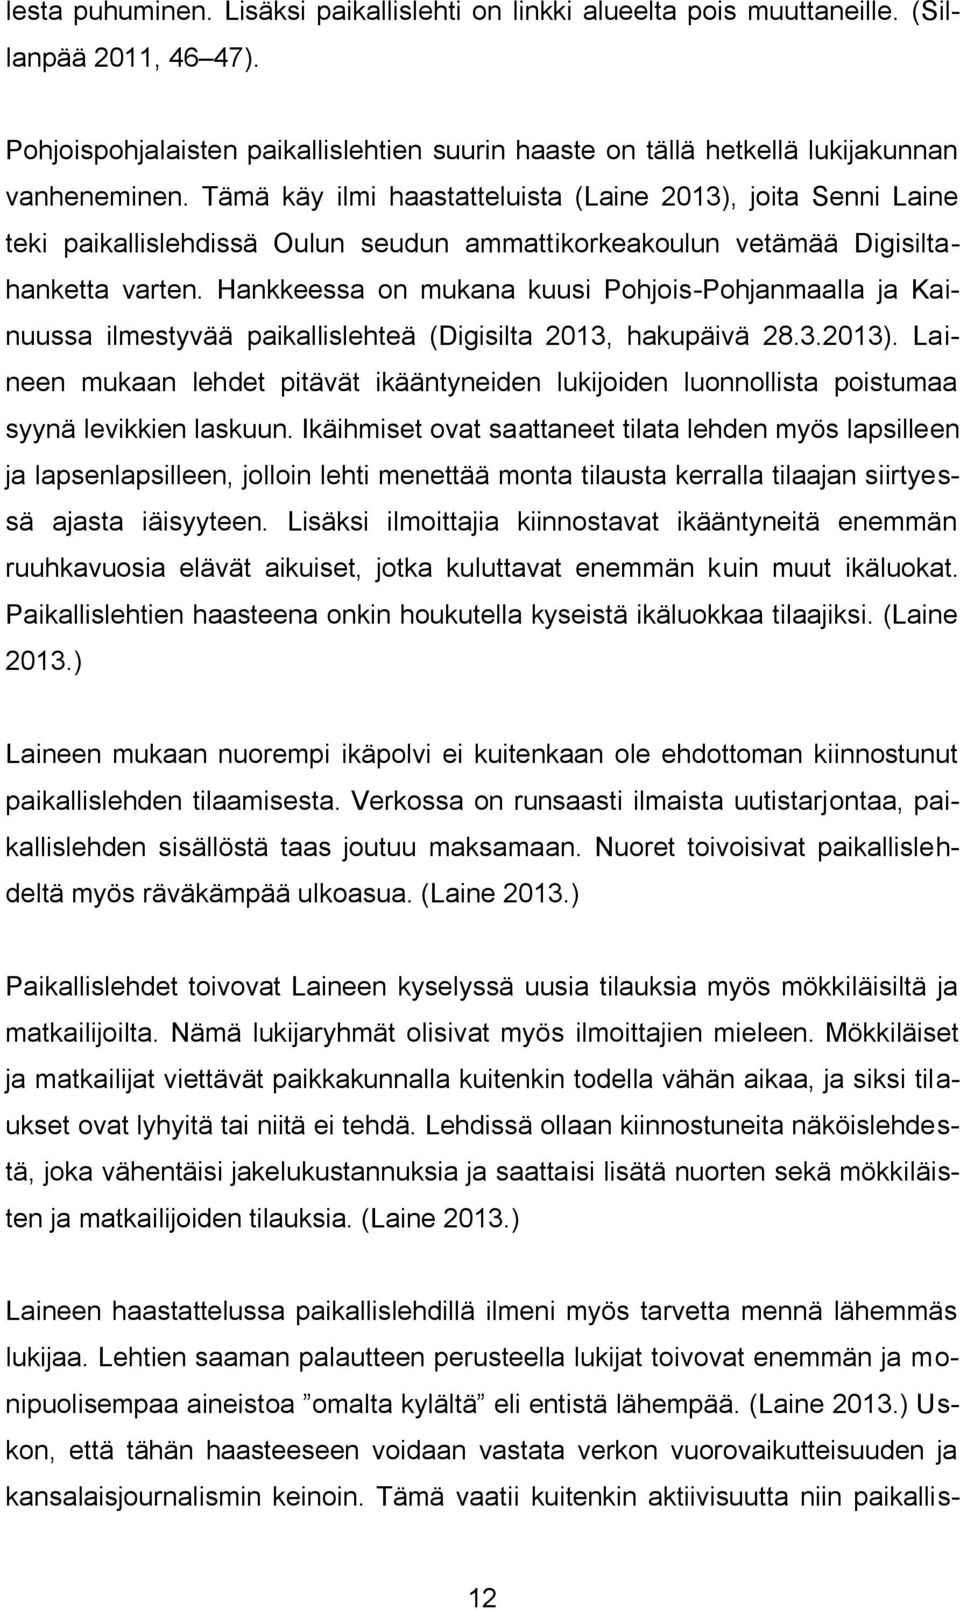 Hankkeessa on mukana kuusi Pohjois-Pohjanmaalla ja Kainuussa ilmestyvää paikallislehteä (Digisilta 2013, hakupäivä 28.3.2013).